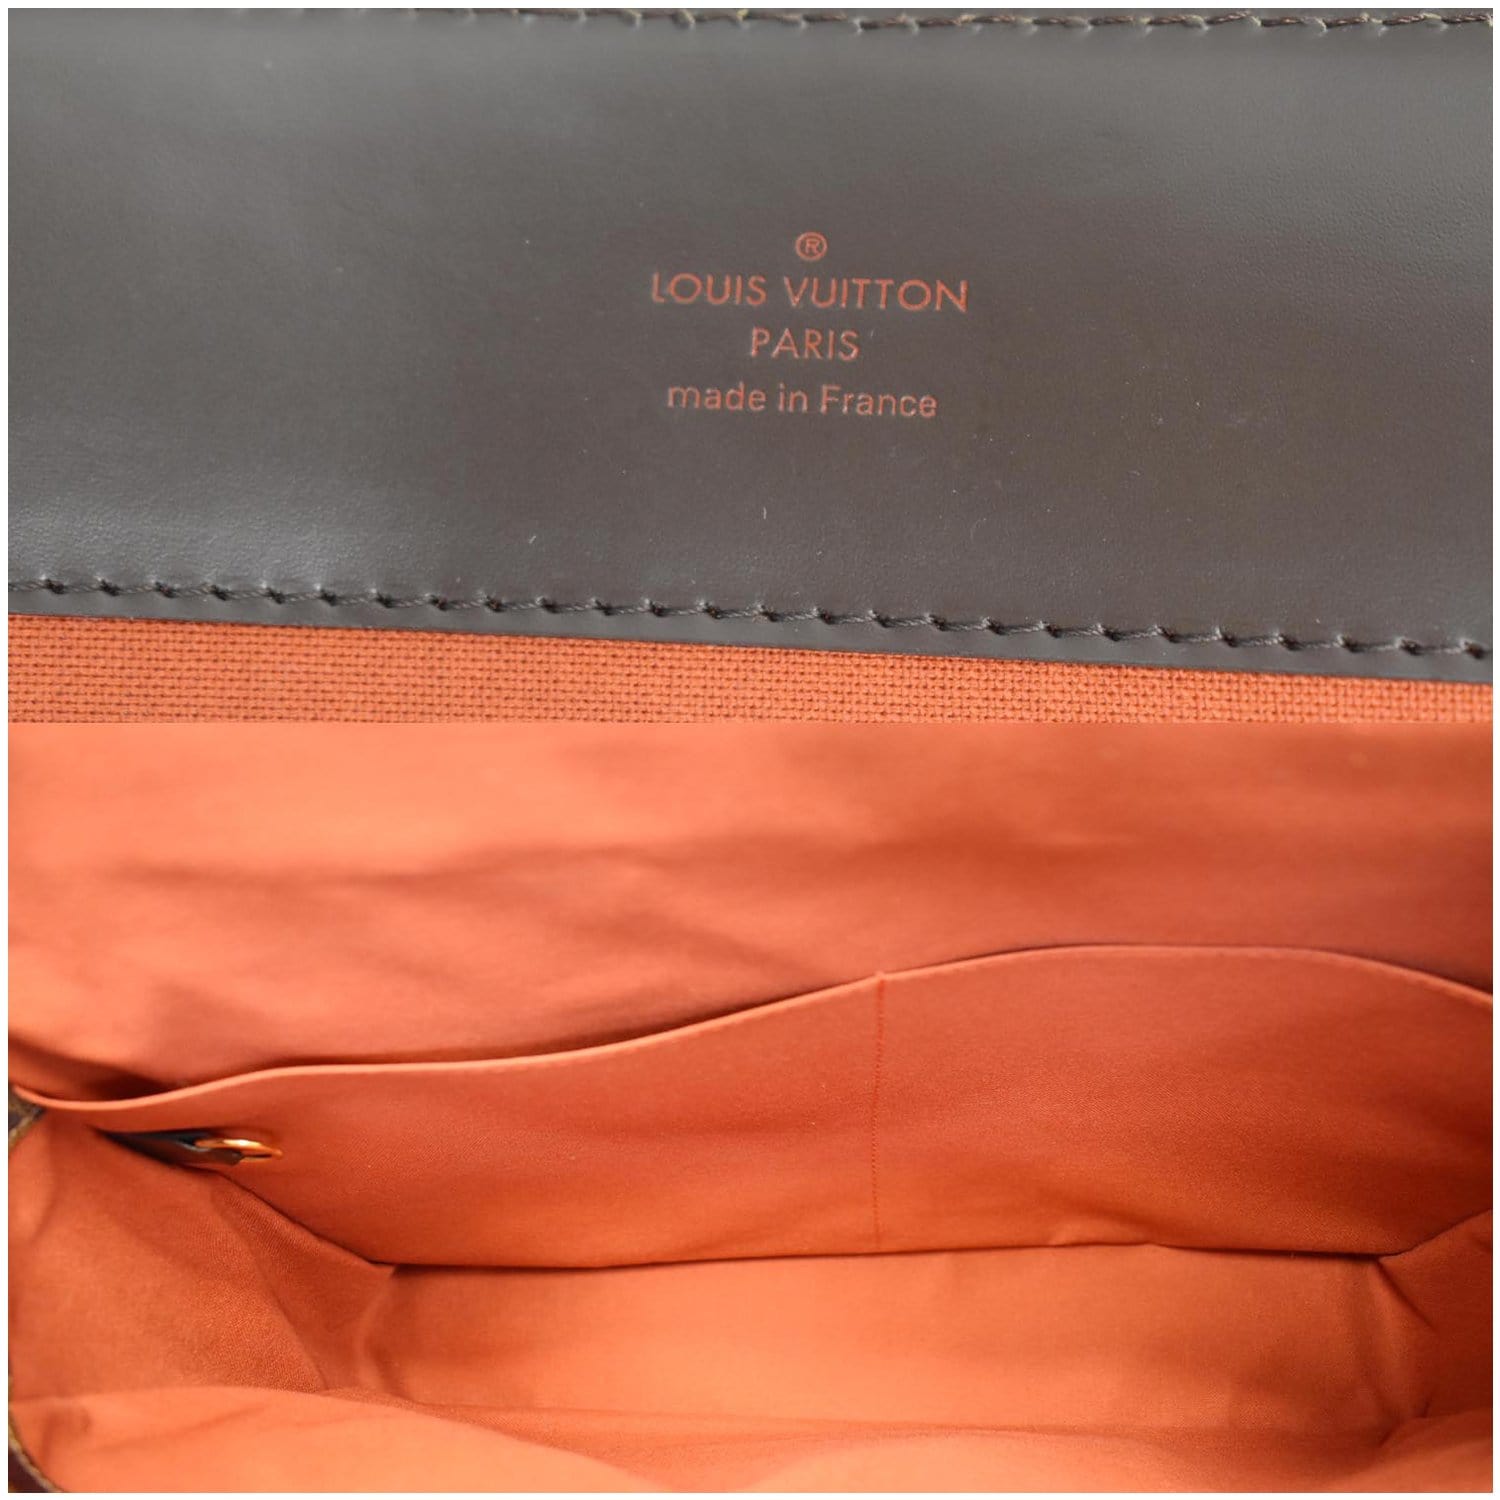 Louis Vuitton Broadway Damier Ebene Canvas Messenger Bag on SALE